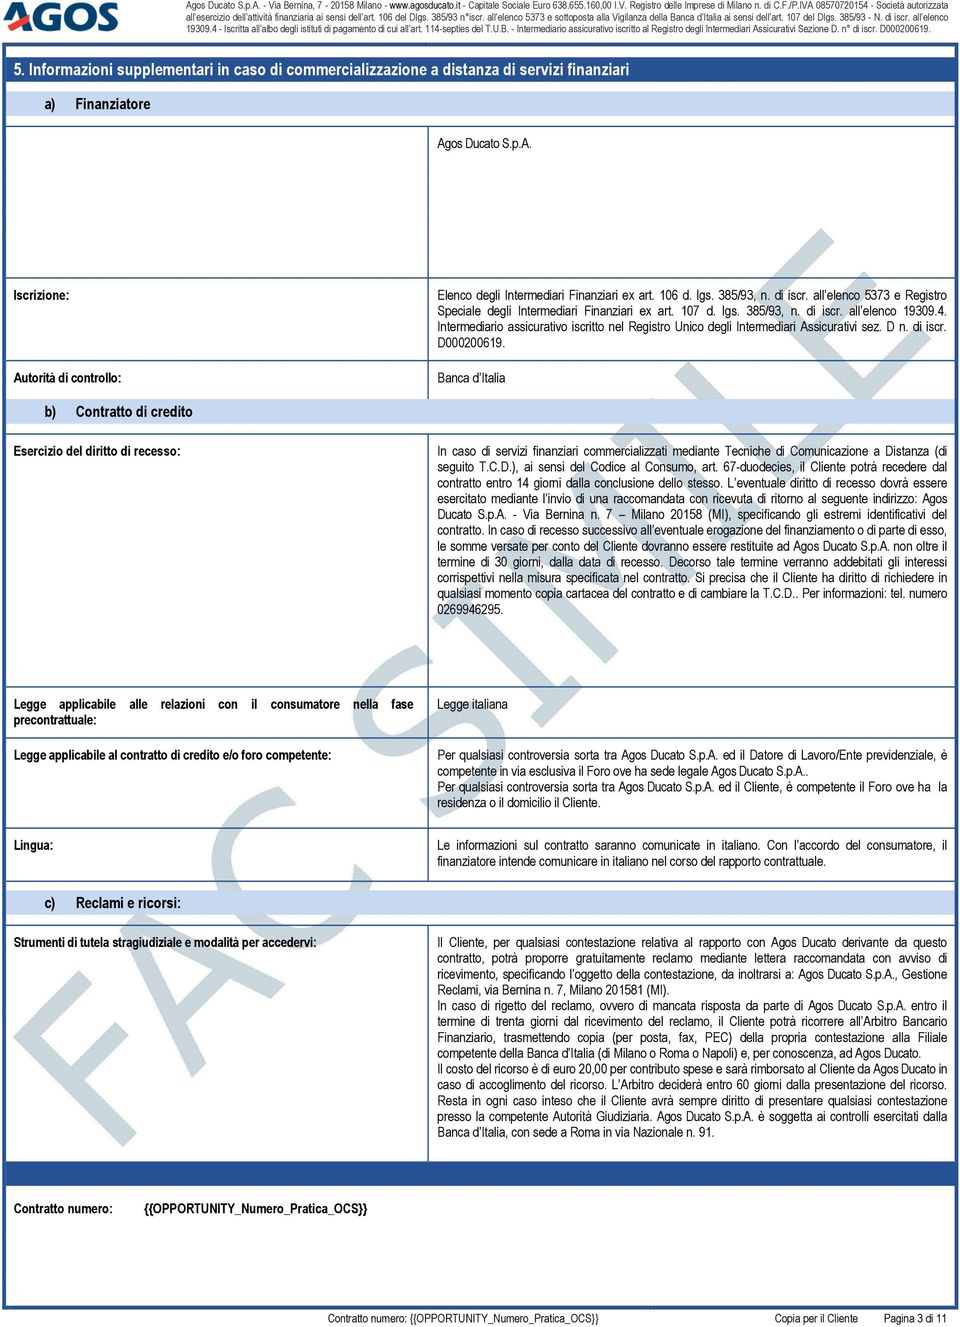 Intermediario assicurativo iscritto nel Registro Unico degli Intermediari Assicurativi sez. D n. di iscr. D000200619.